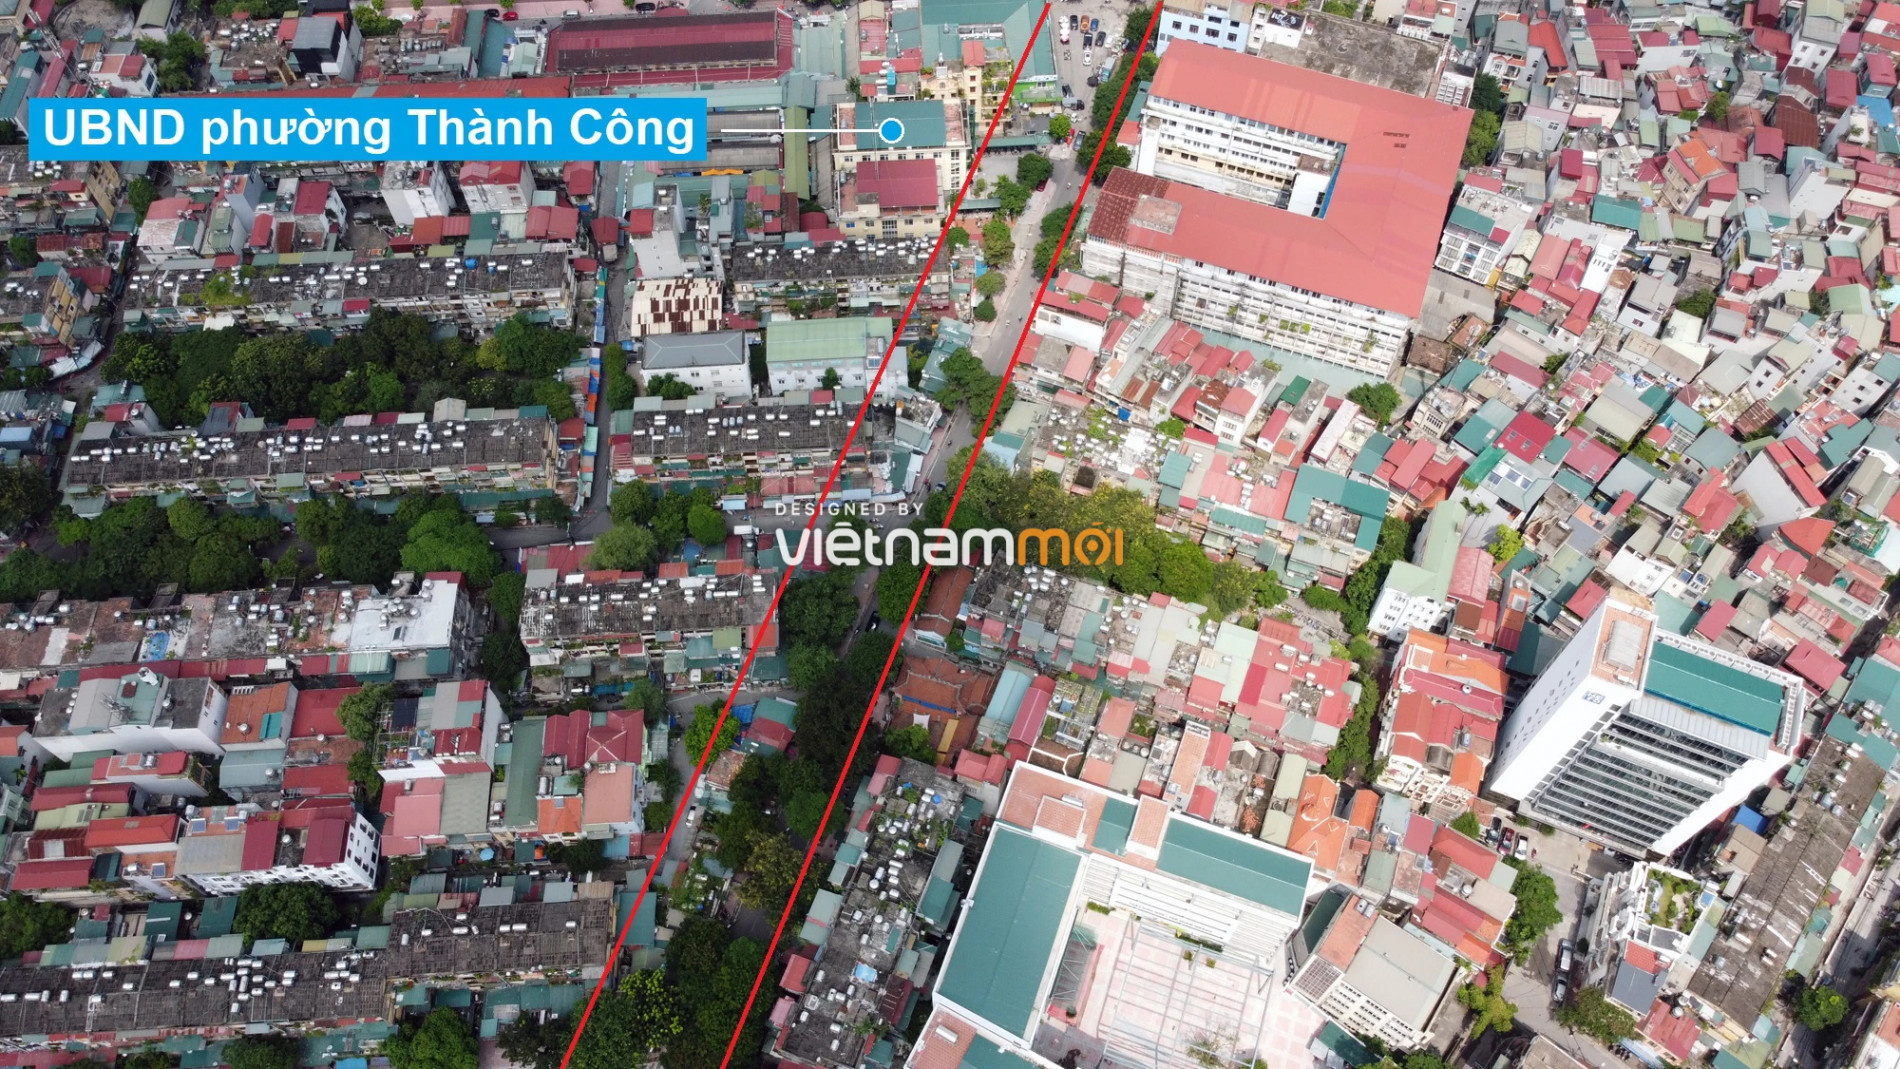 Những khu đất sắp thu hồi để mở đường ở phường Thành Công, Ba Đình, Hà Nội (phần 2) - Ảnh 6.